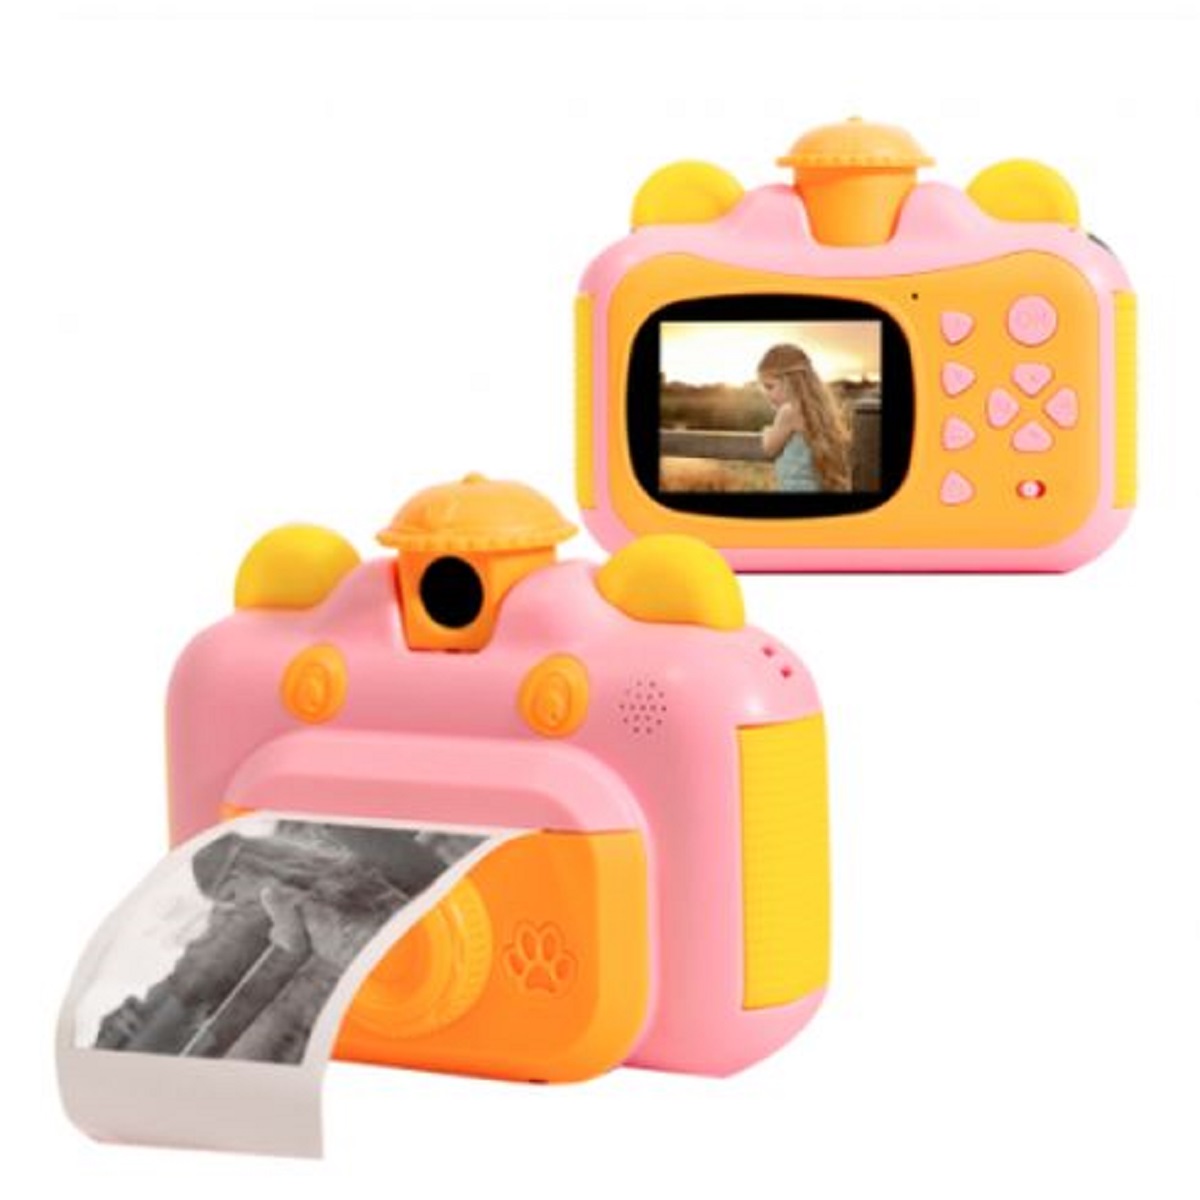 Фотоаппарат детский с моментальной печатью фото